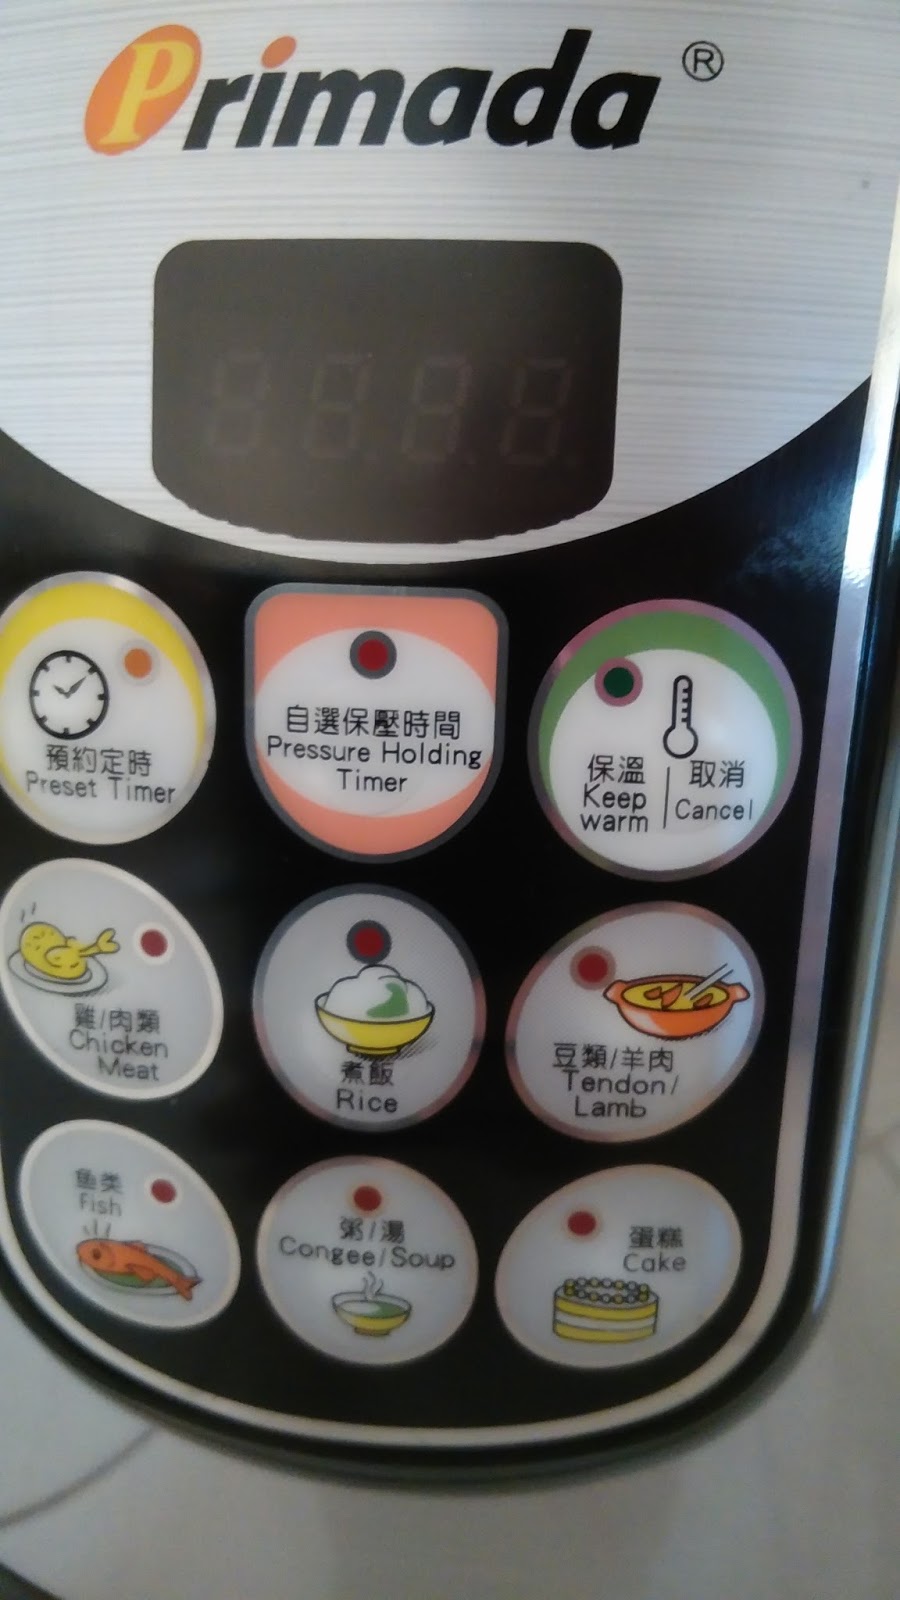 Mia 的生活记事本: 体验-煲汤 PRIMADA PRESSURE COOKER PC-6010 煮食体验后感 ...